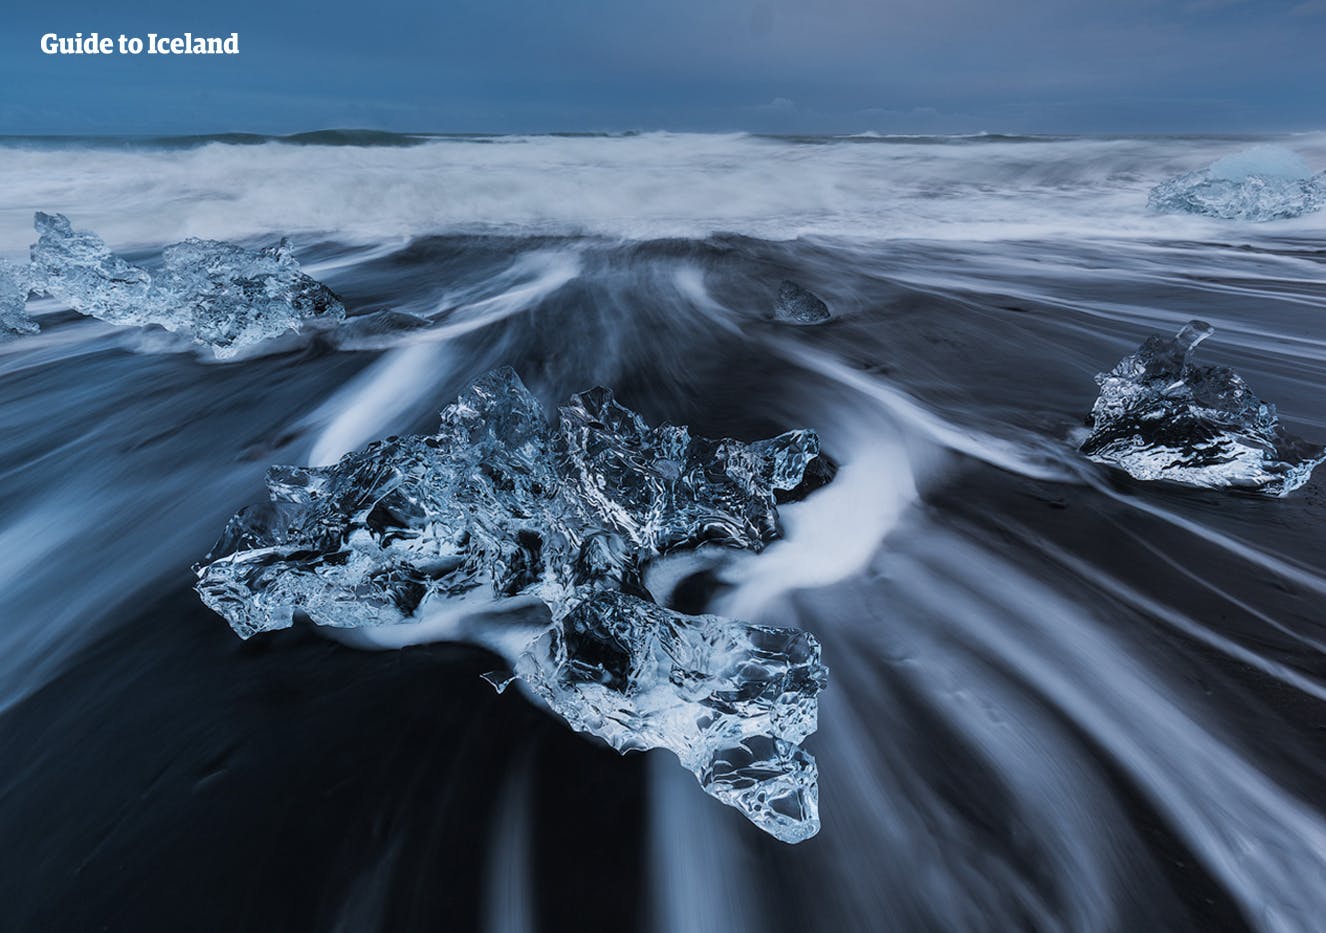 Diamentowa Plaża przy lagunie lodowcowej Jökulsárlón to jedna z najpiękniejszych plaż Islandii.